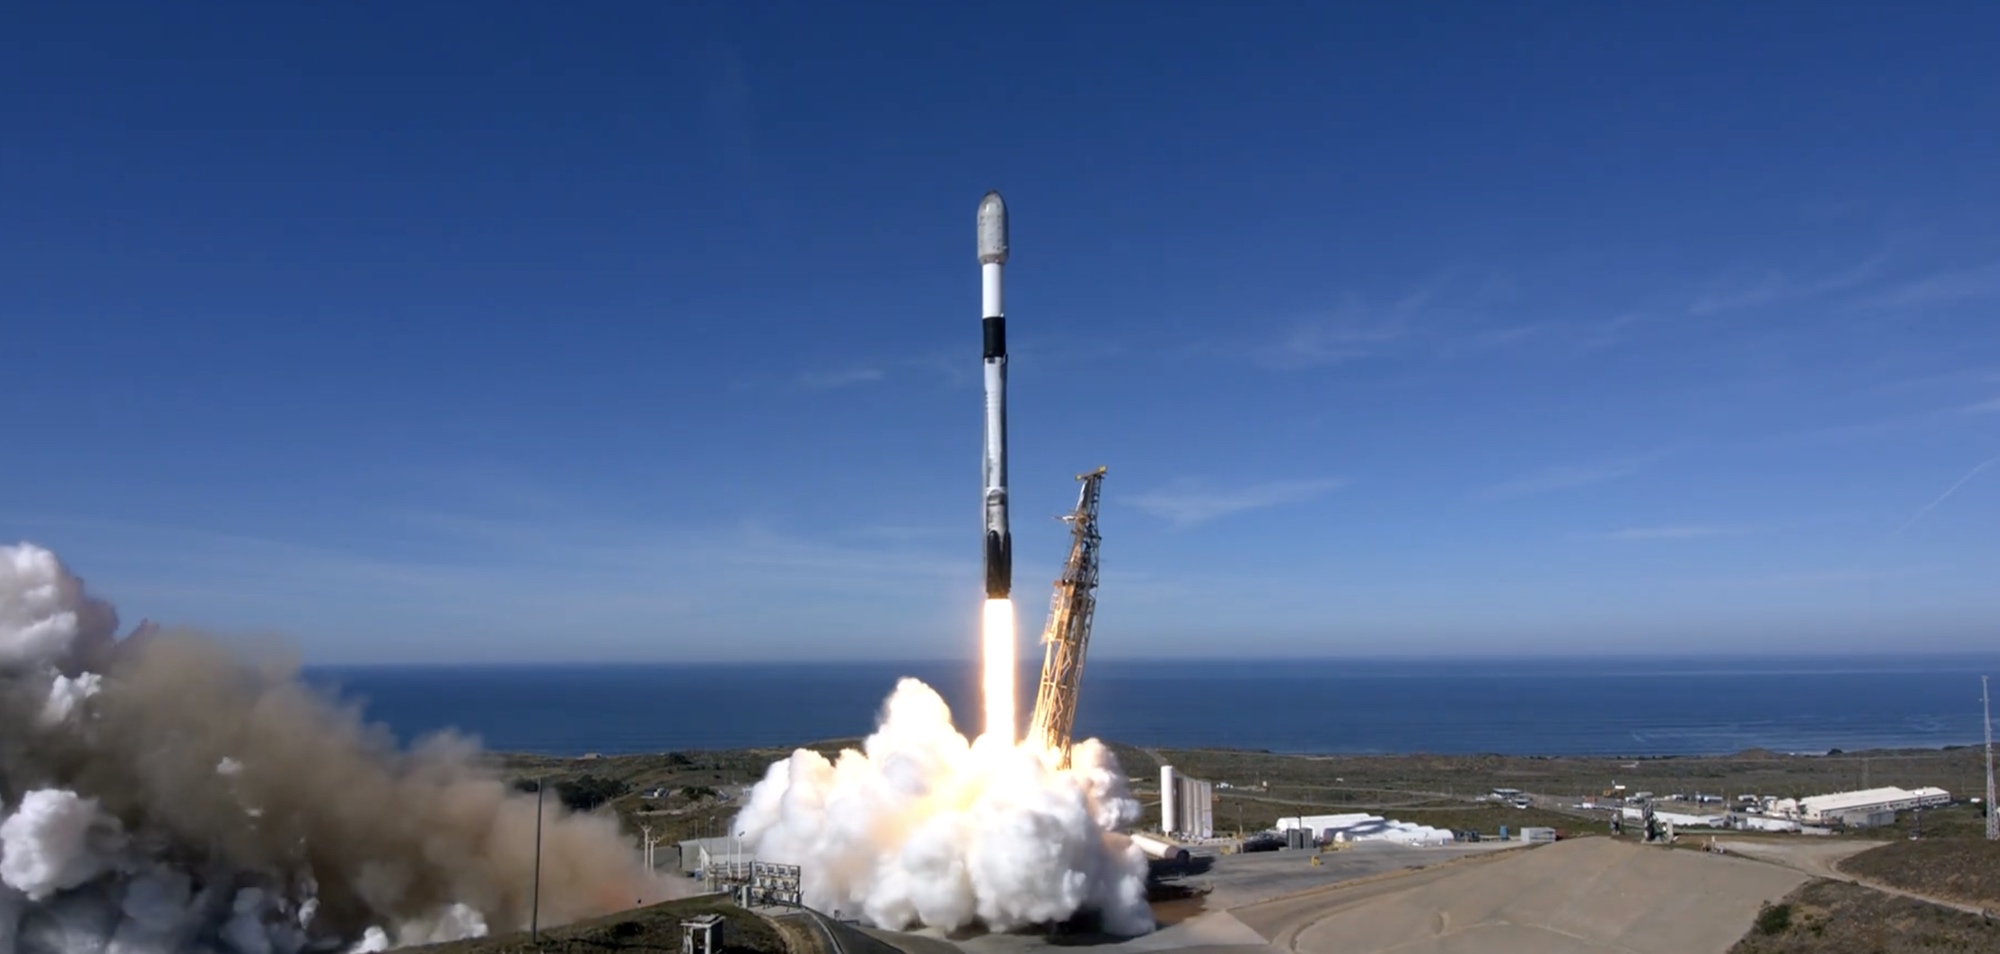 SpaceX käynnistää yhdeksännen omistetun kyytimatkatehtävän